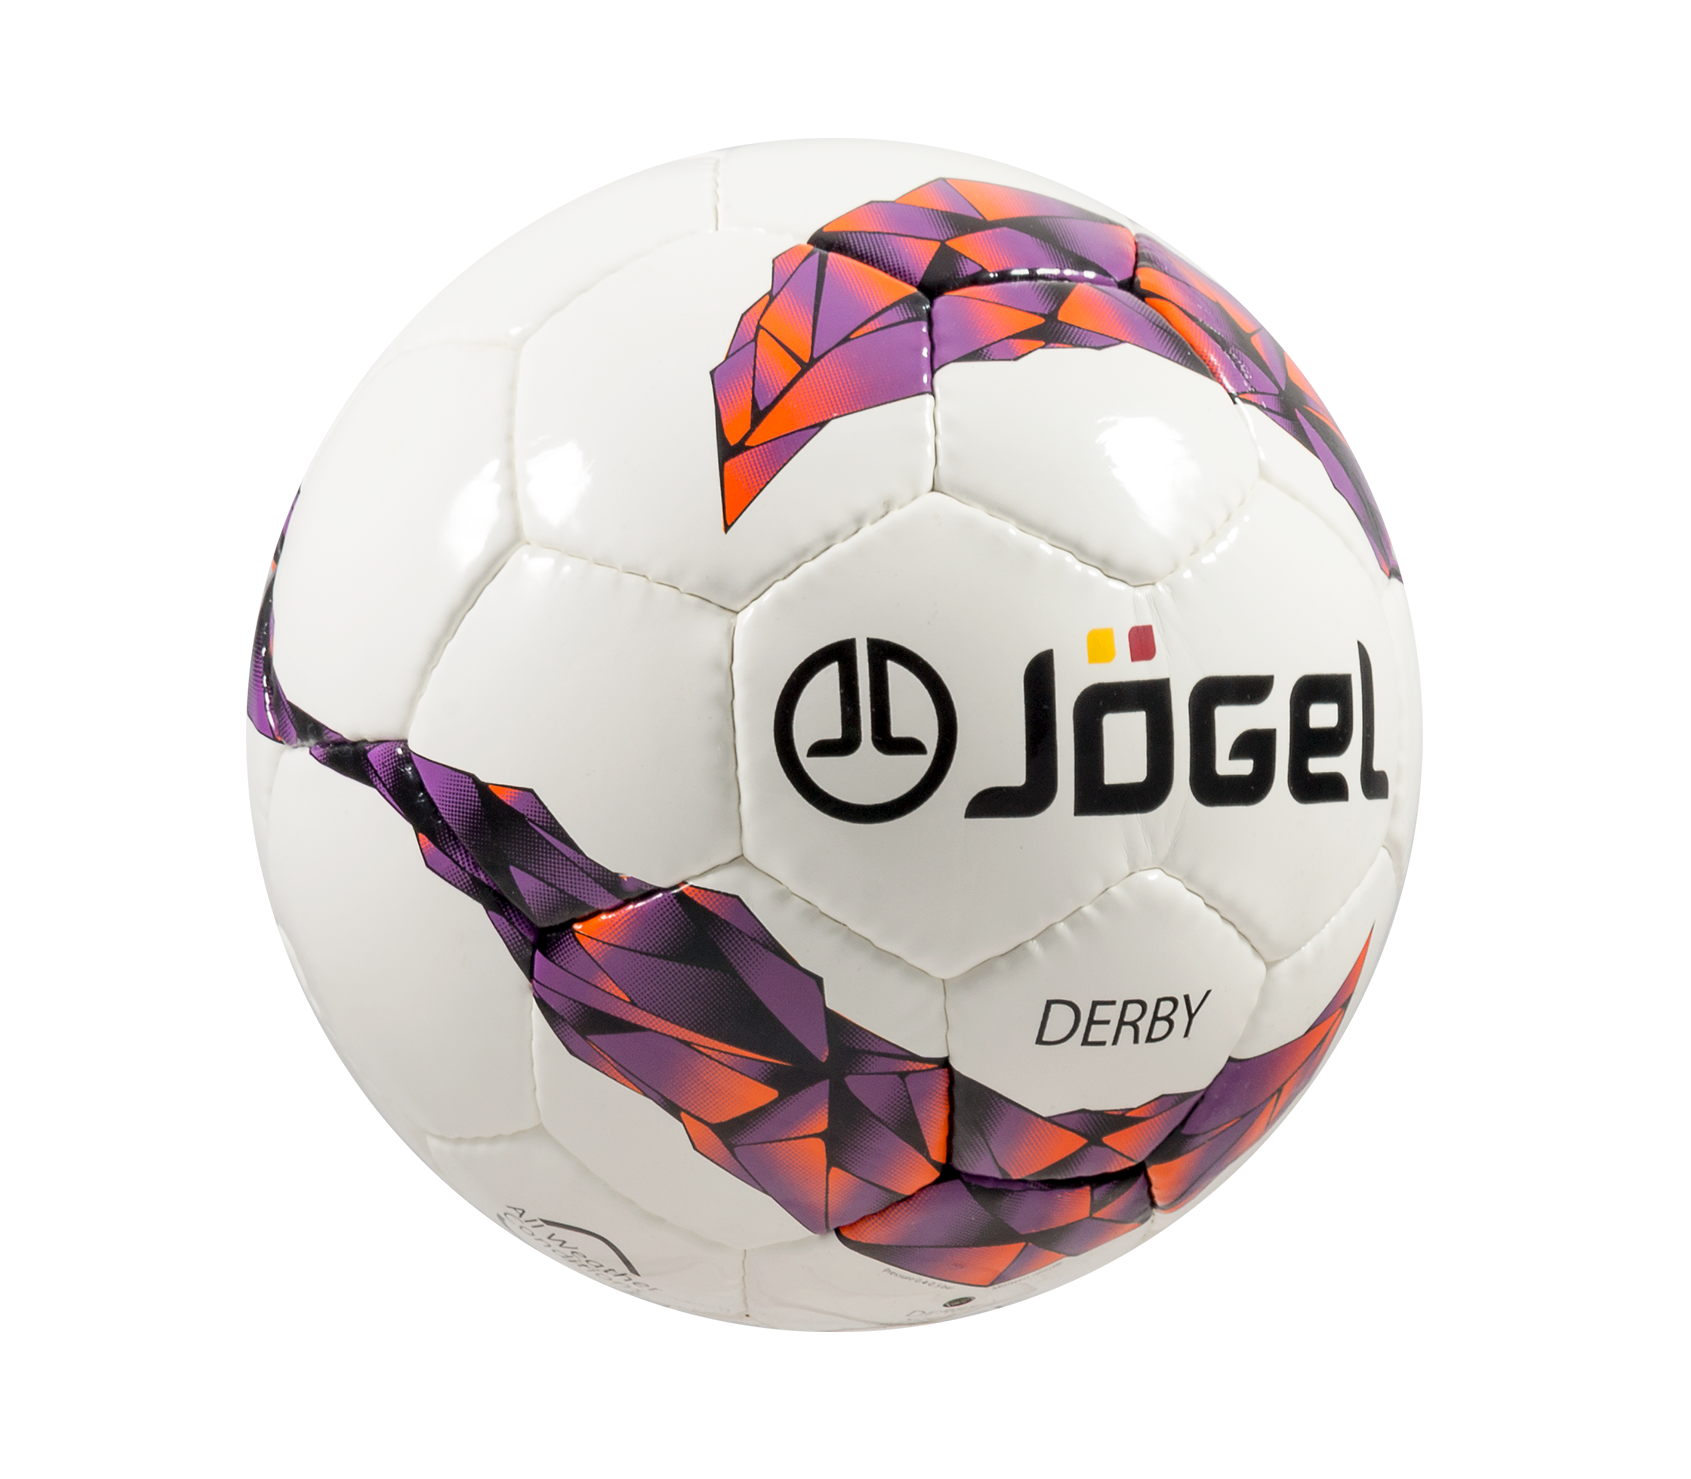 J gel. Мяч футбольный Jogel js-560 Derby №3. Мяч футбольный js-560 Derby №4. Мяч футбольный Jögel js-460 Force №4 1/40. Футбольный мяч Jögel no 3.